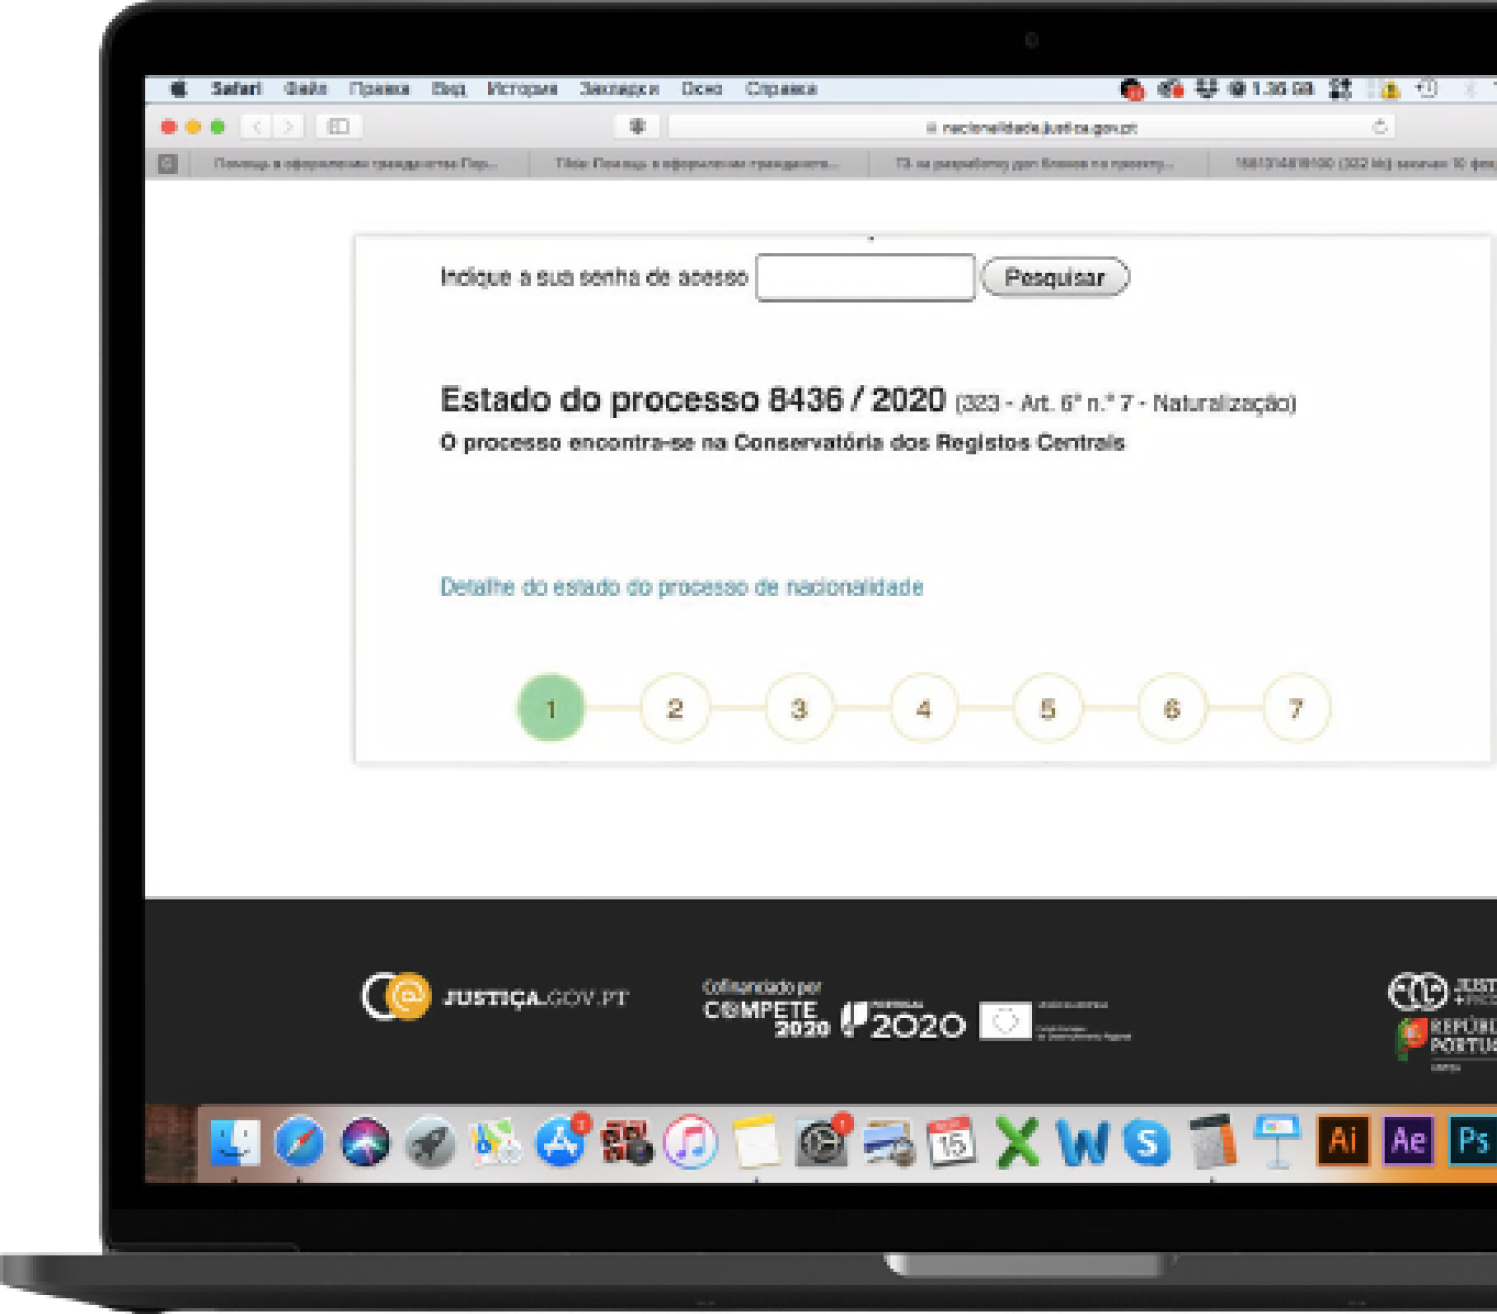 Отслеживайте статус заявки на официальном сайте правительства Португалии